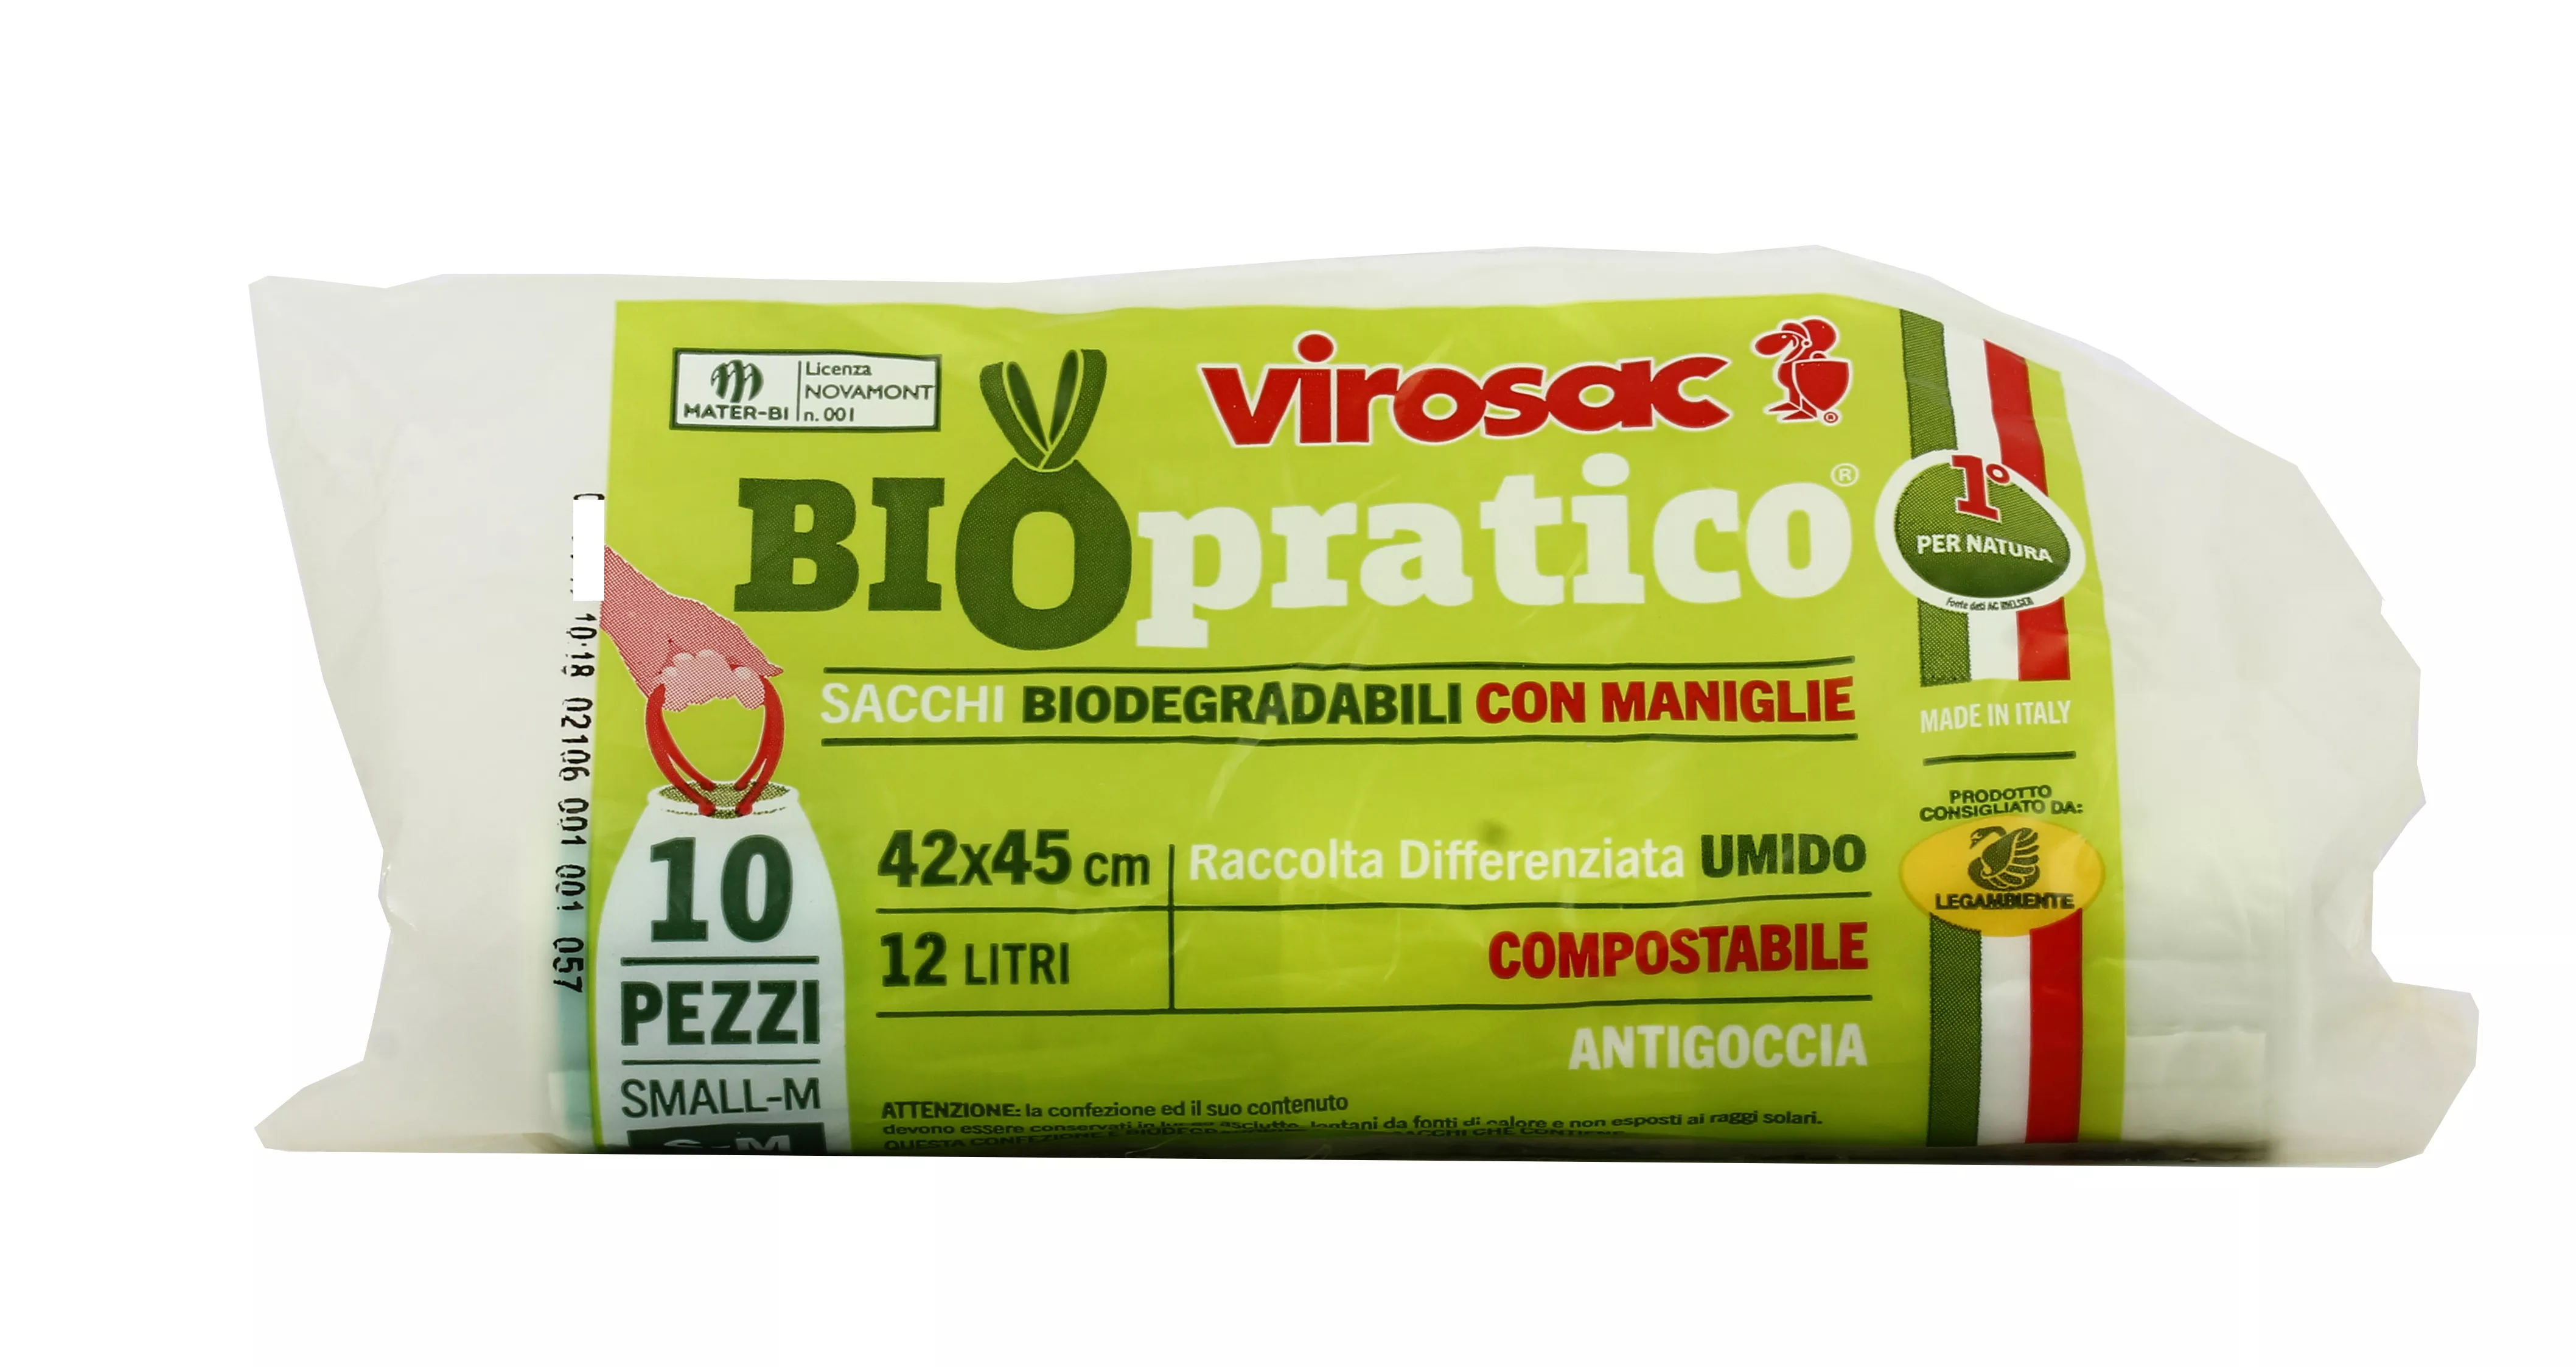 Sacchi Biodegradabile Compostabile umido con maniglie saccobello